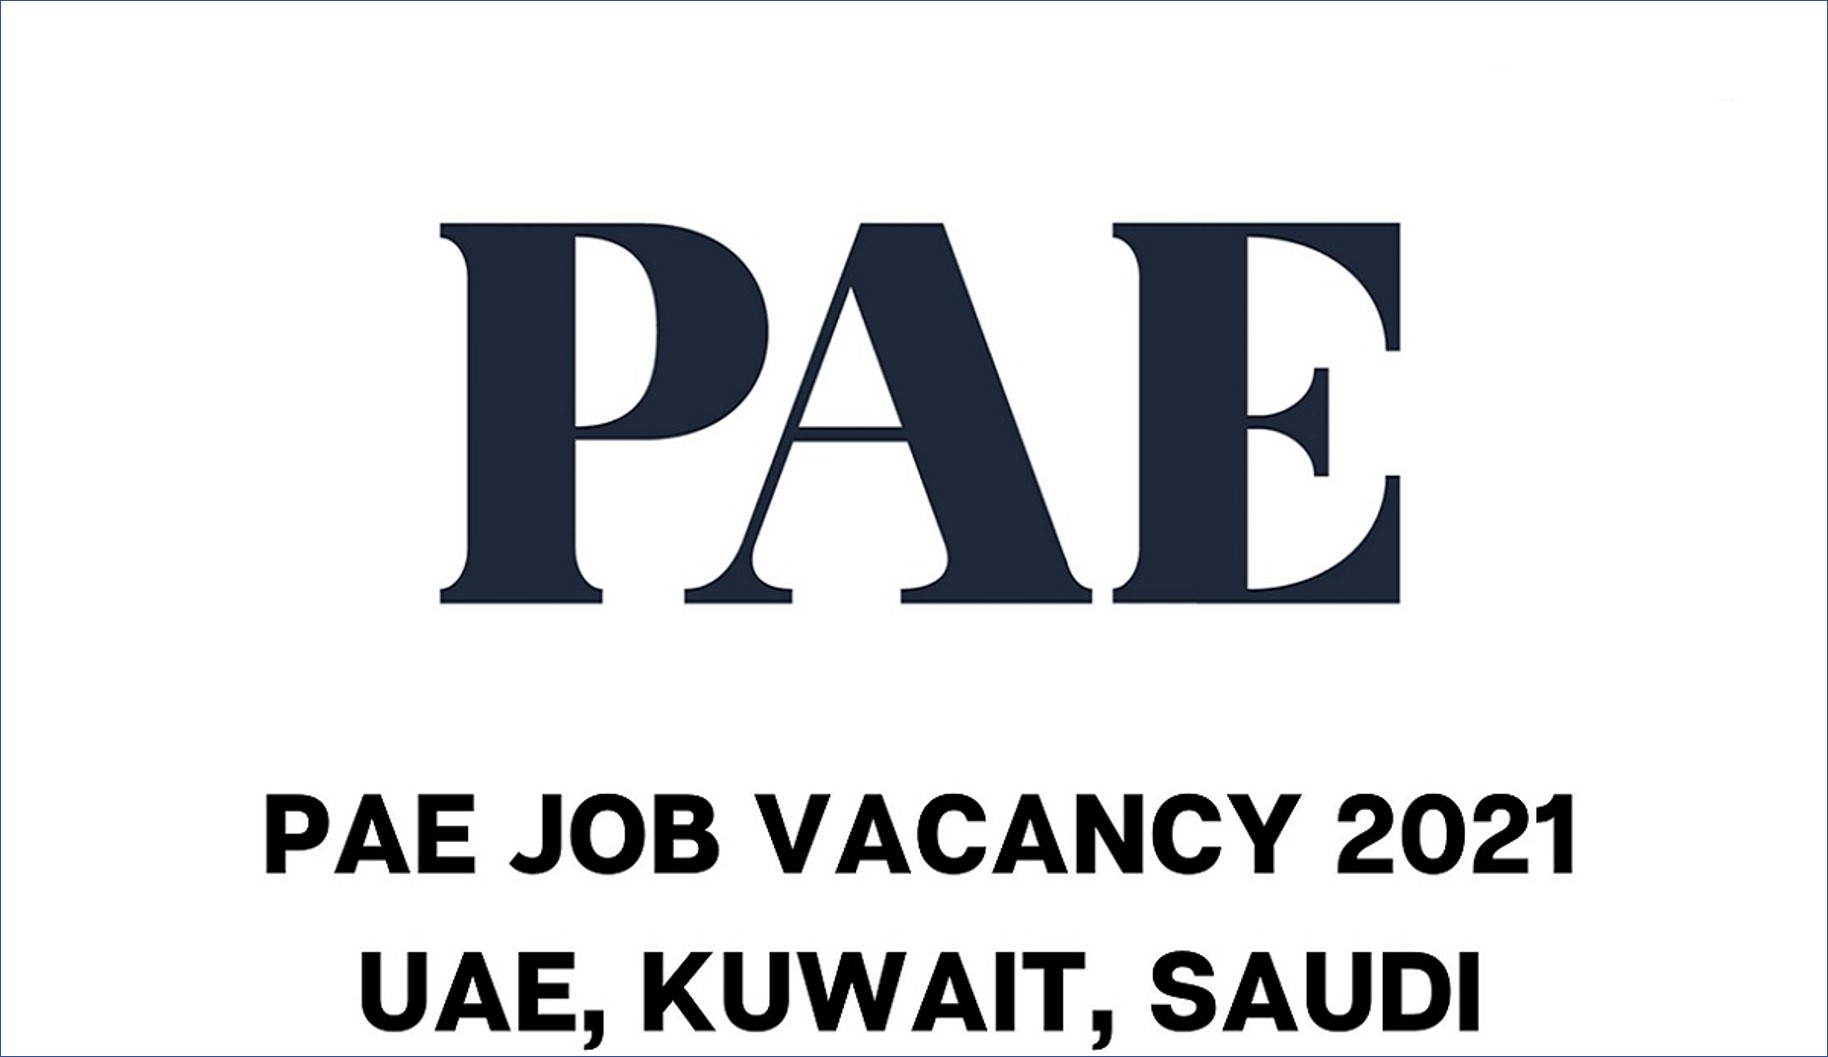 شركة Pae بالكويت توفر فرص عمل فنية وادارية للرجال والنساء